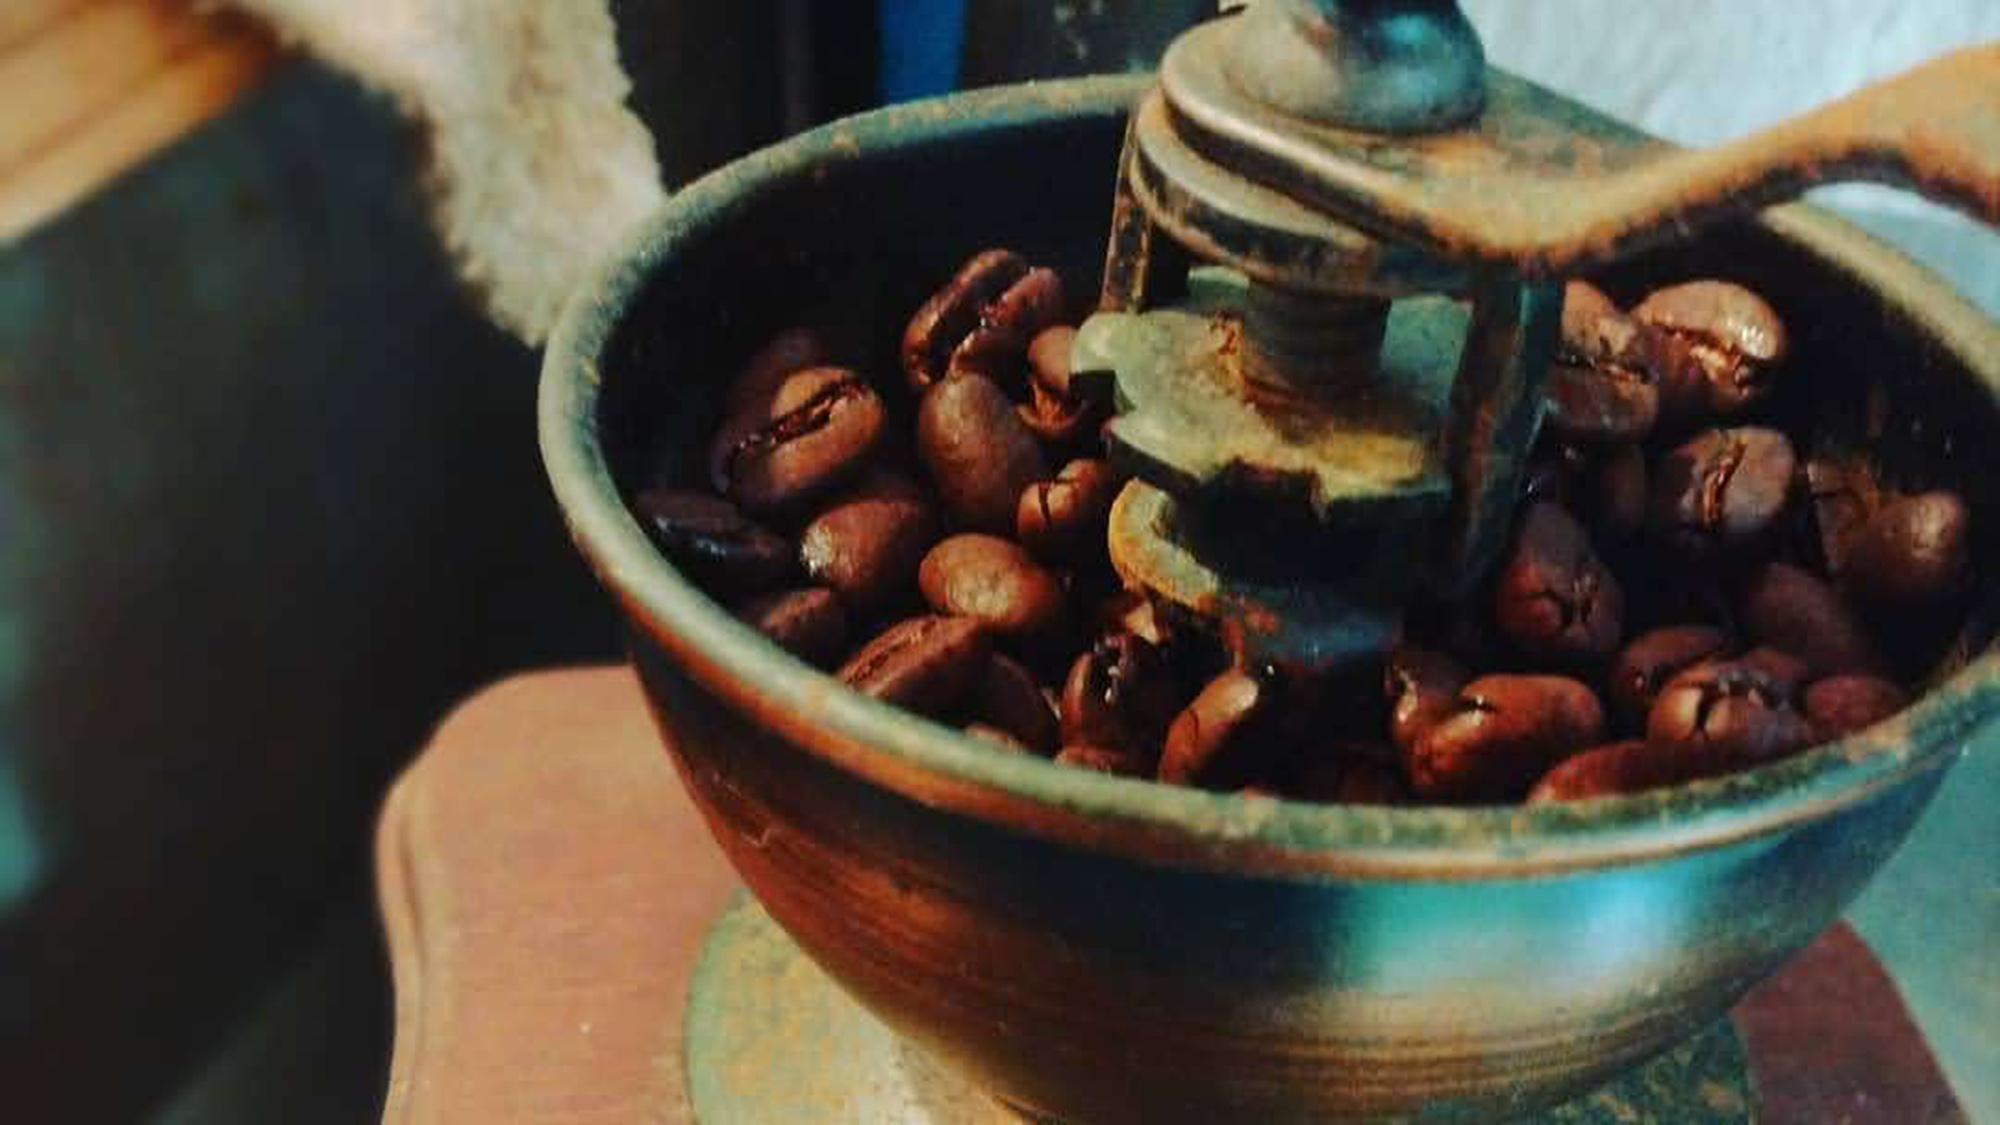 ・【コーヒー】朝のお目覚めに自家焙煎コーヒーはいかがですか